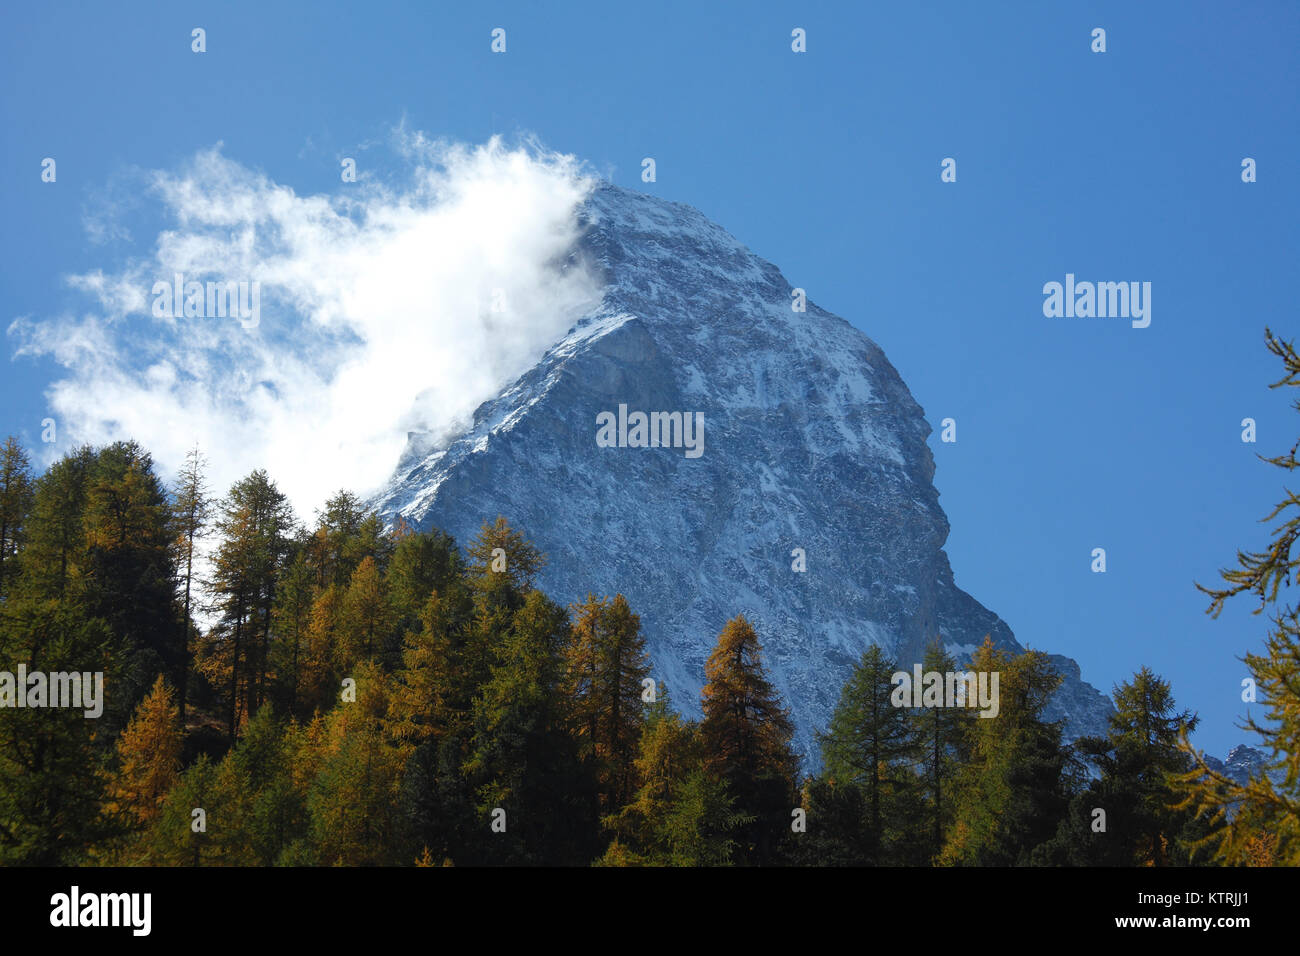 Stafelalp, Matterhorn mit Wolken und Nordwand, Zermatt, Schweiz I  Stafelalp, Matterhorn, Zermatt, Switzerland Stock Photo